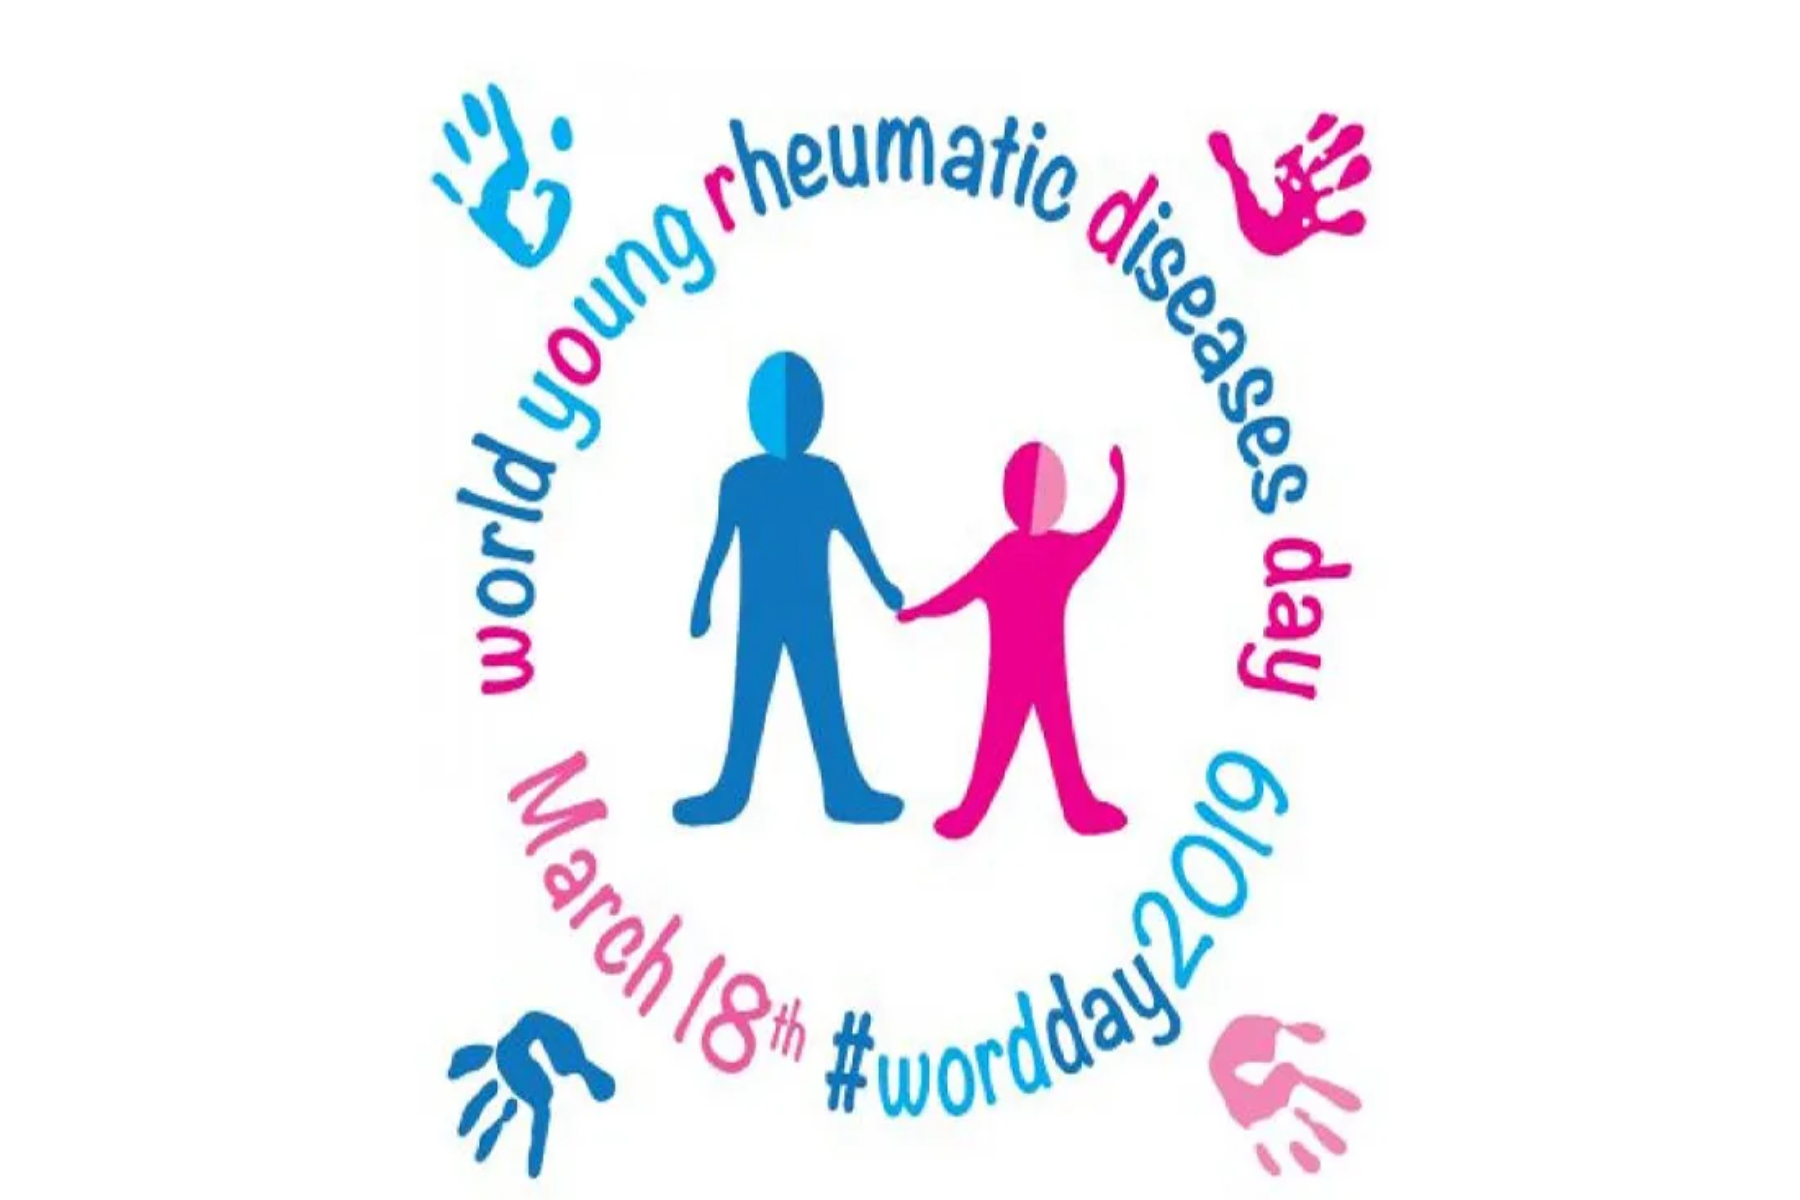 18 Μαρτίου: Παγκόσμια Ημέρα Νεανικών Ρευματικών Νοσημάτων